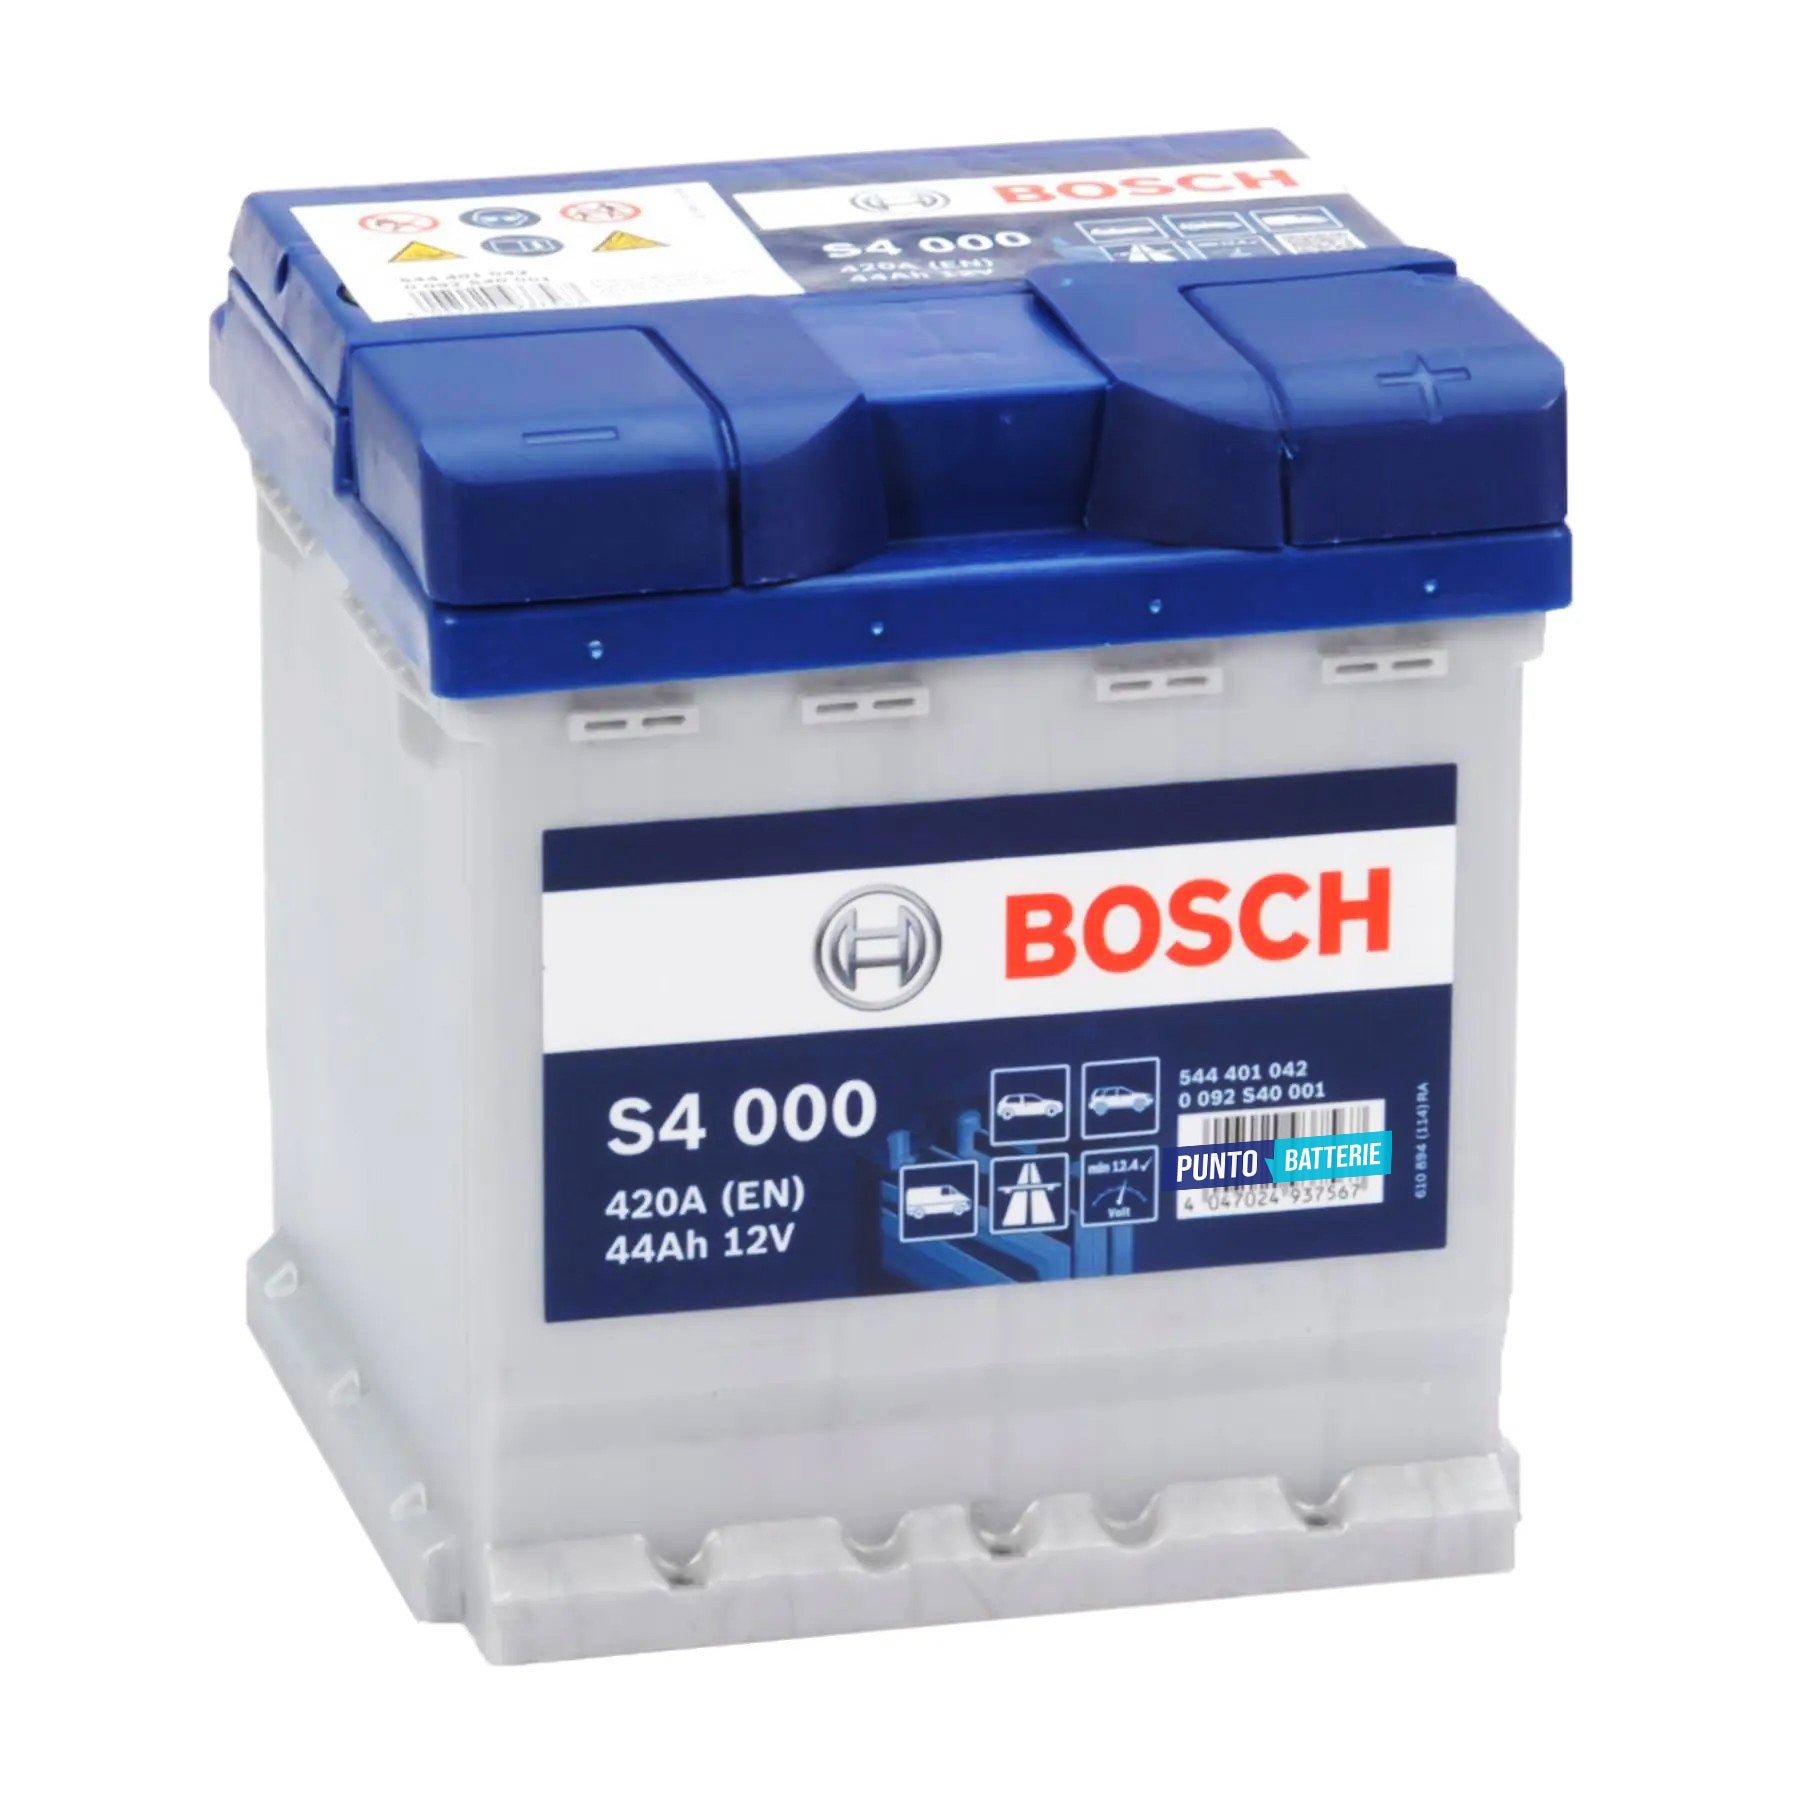 Batteria originale Bosch S4 S4 000, dimensioni 175 x 175 x 190, polo positivo a destra, 12 volt, 44 amperora, 420 ampere. Batteria per auto e veicoli leggeri.